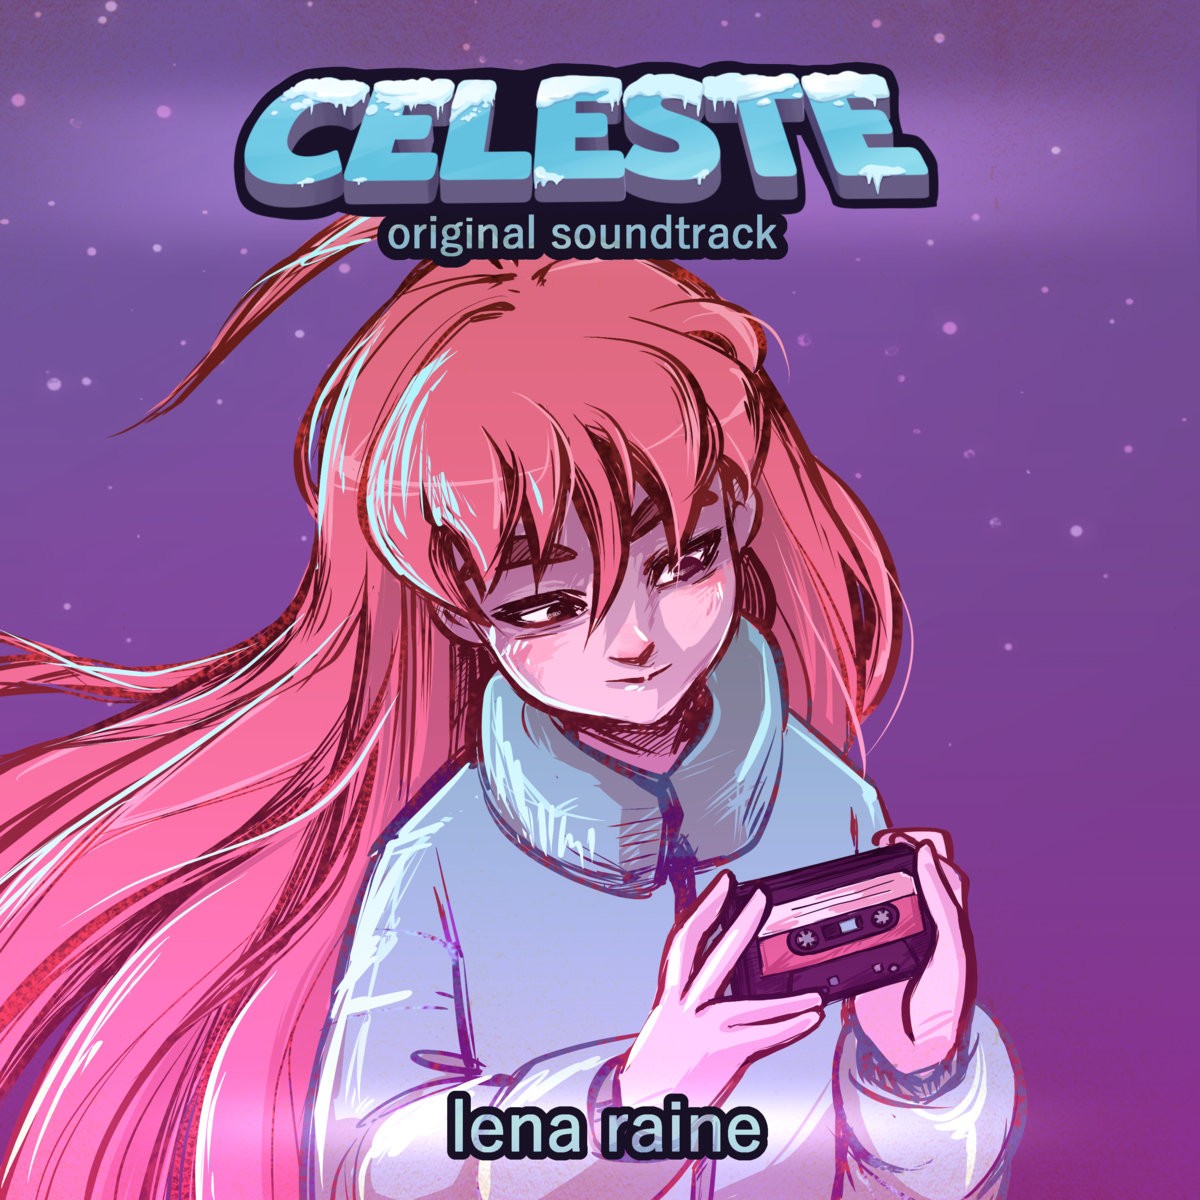 Celeste Original Soundtrack Bangumi 番组计划